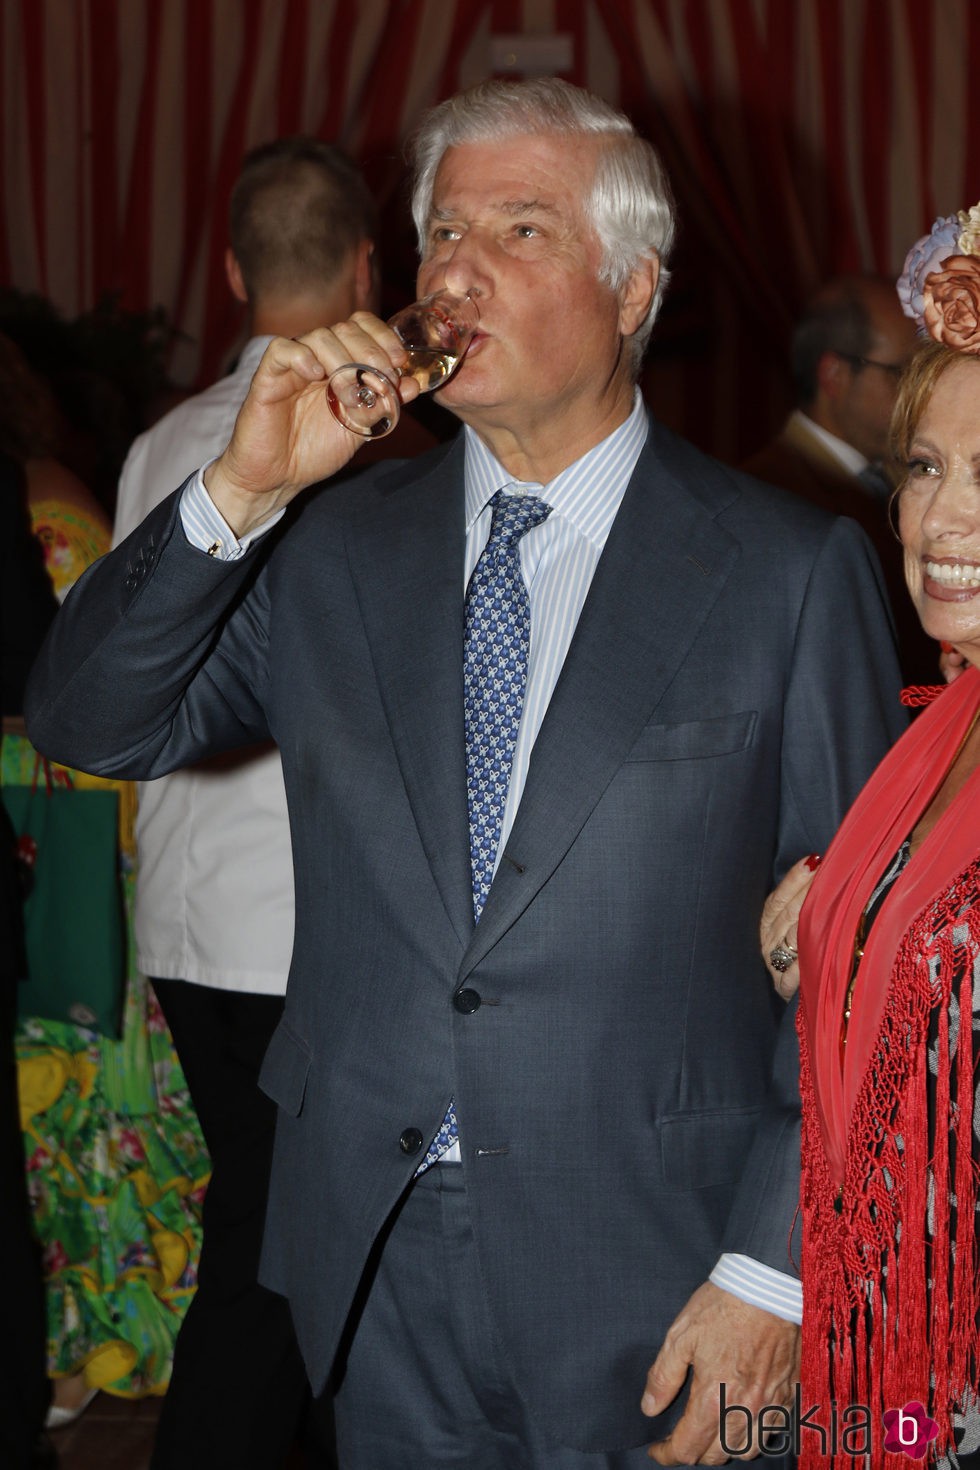 El Duque de Alba bebiendo manzanilla en la Feria de Abril 2016